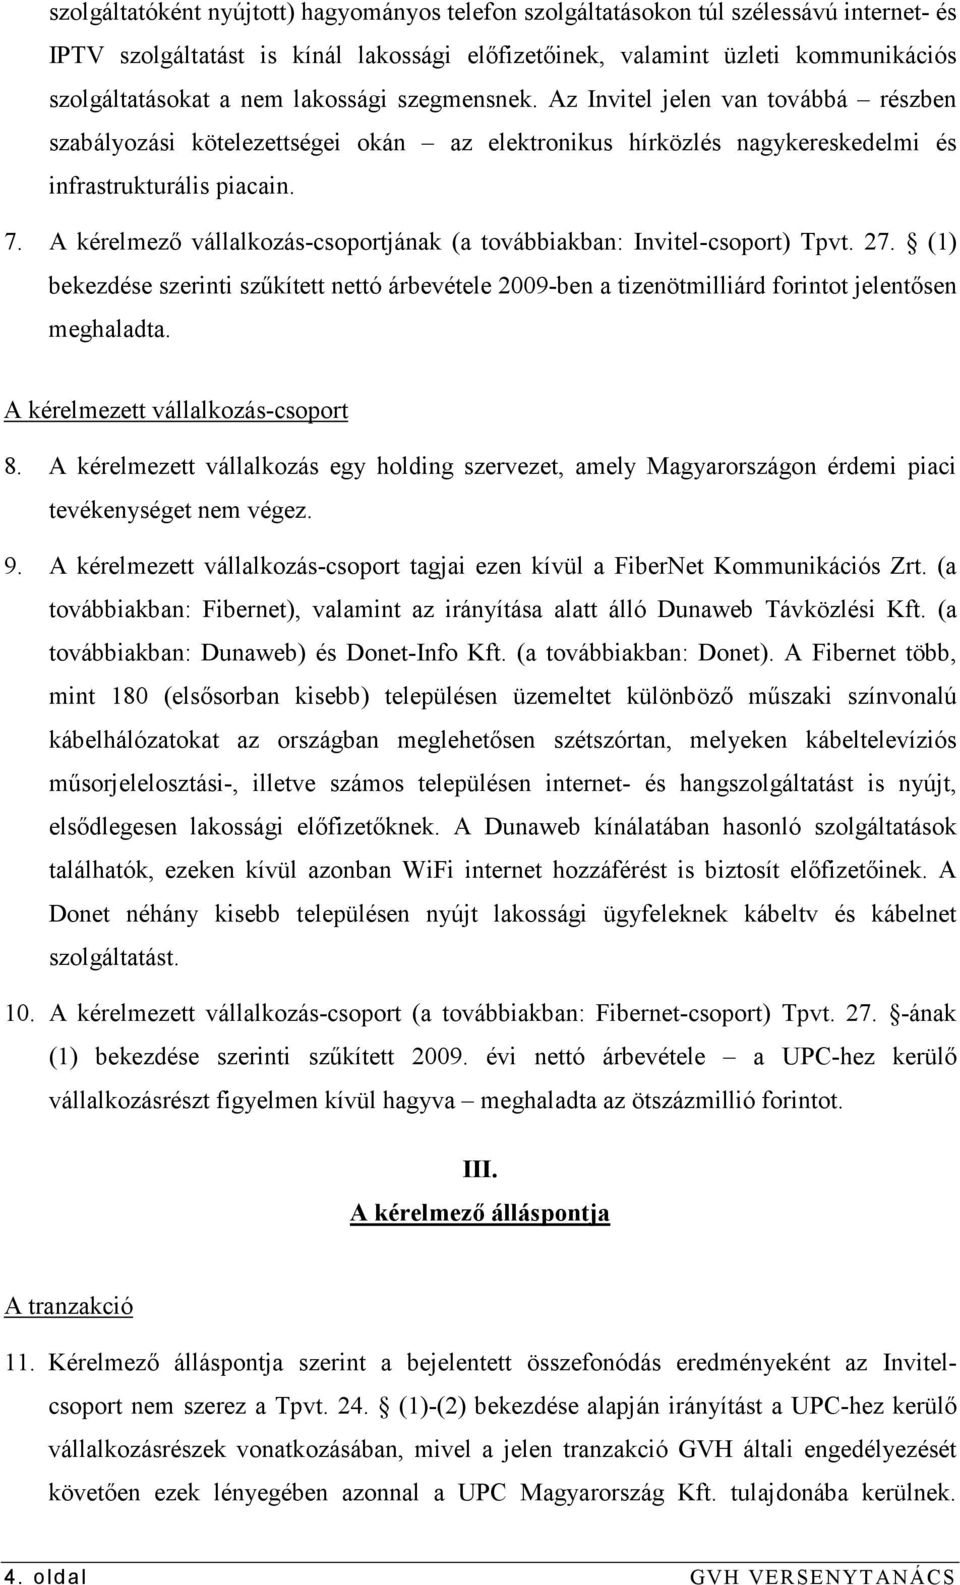 A kérelmezı vállalkozás-csoportjának (a továbbiakban: Invitel-csoport) Tpvt. 27. (1) bekezdése szerinti szőkített nettó árbevétele 2009-ben a tizenötmilliárd forintot jelentısen meghaladta.